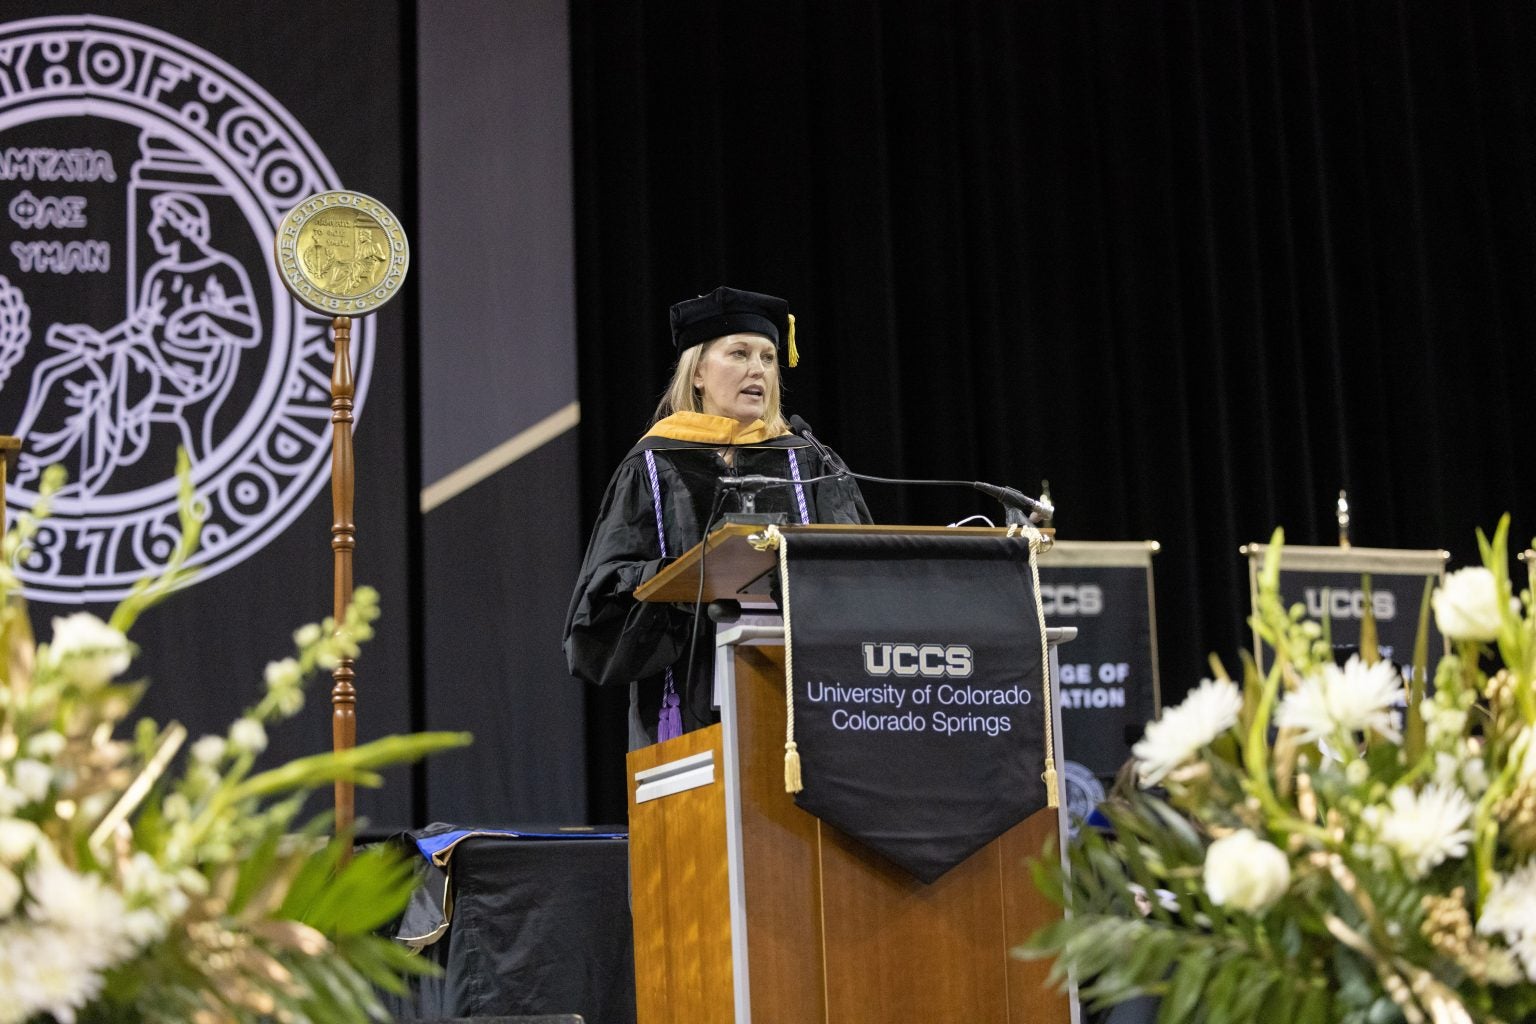 Jill Schramm, UCCS’ fall Distinguished Alumna Speaker